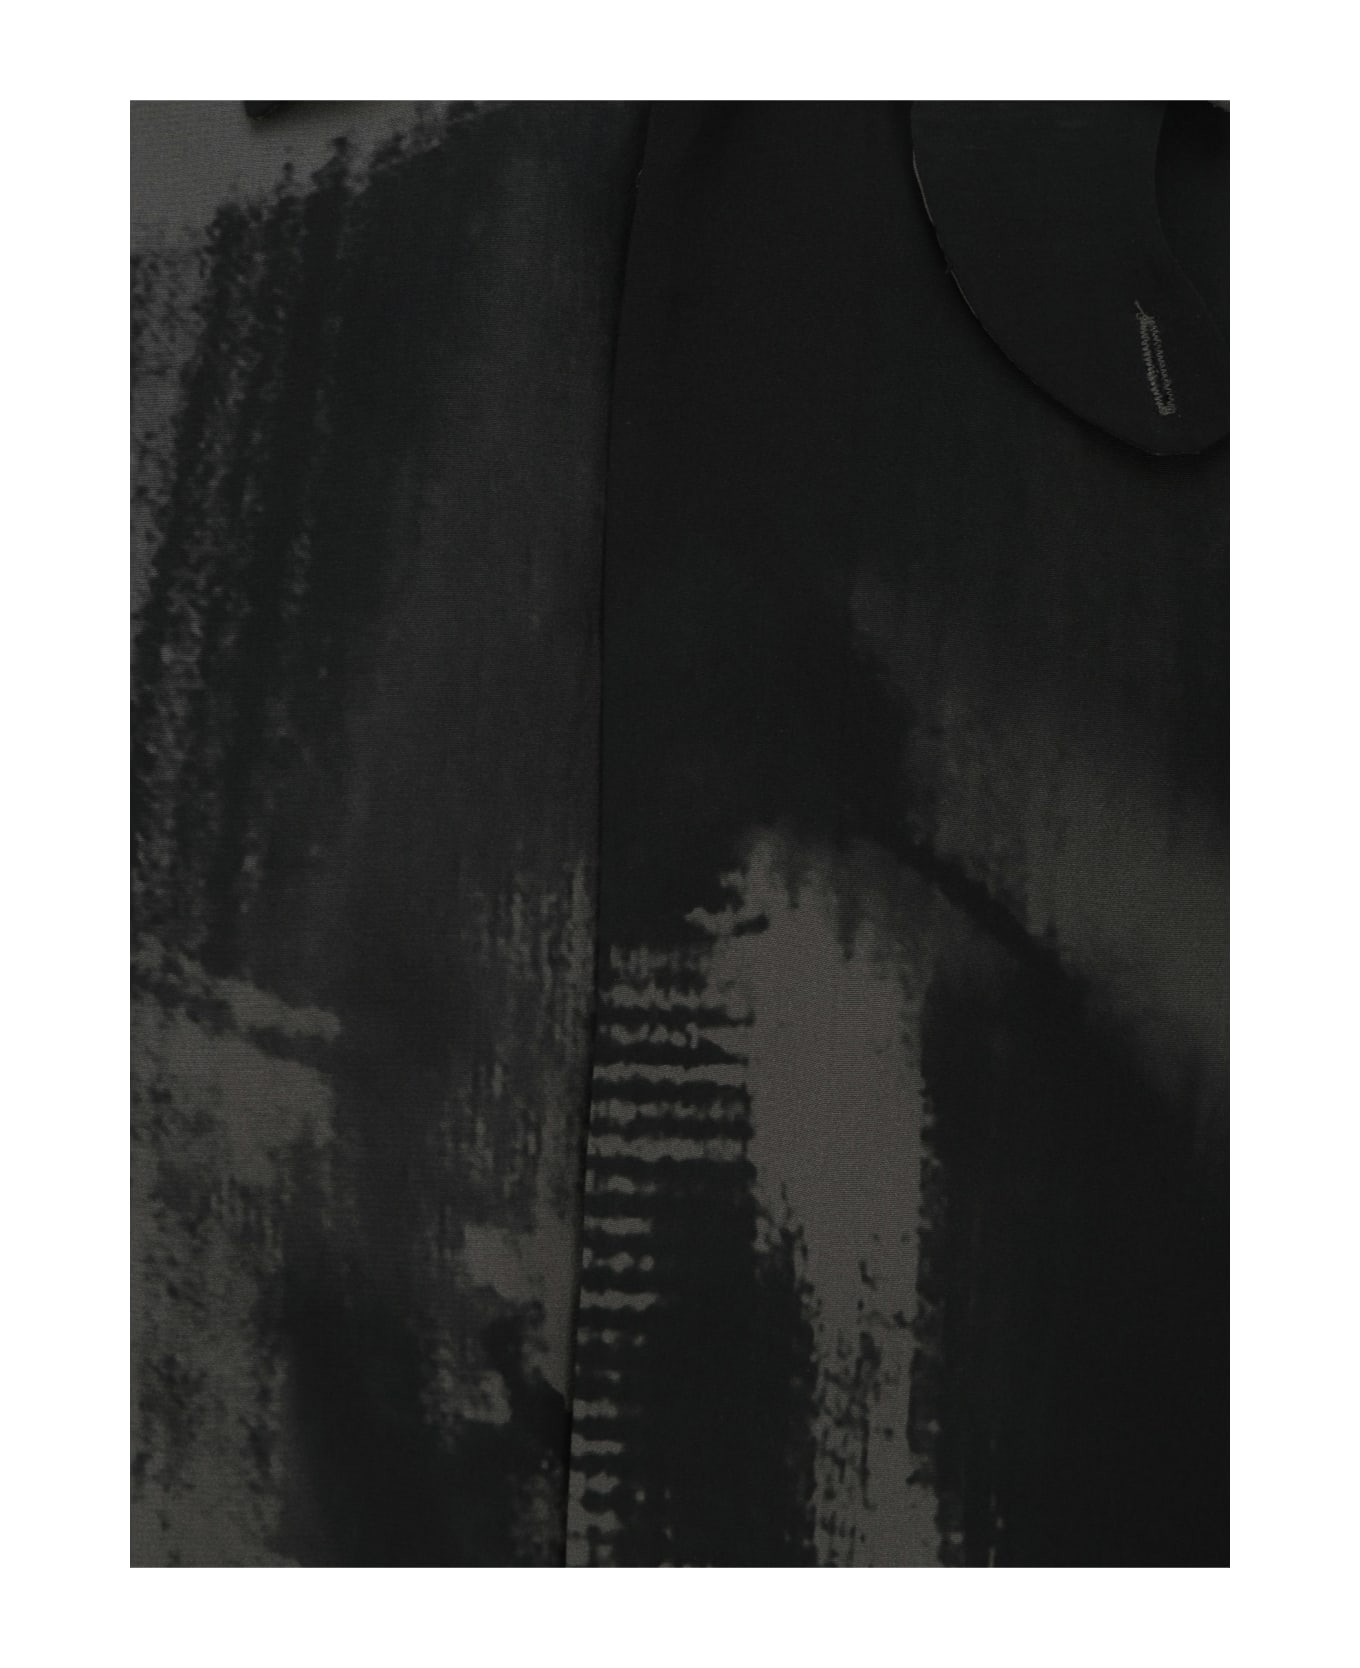 McQ Alexander McQueen Shirt - Darkest Black